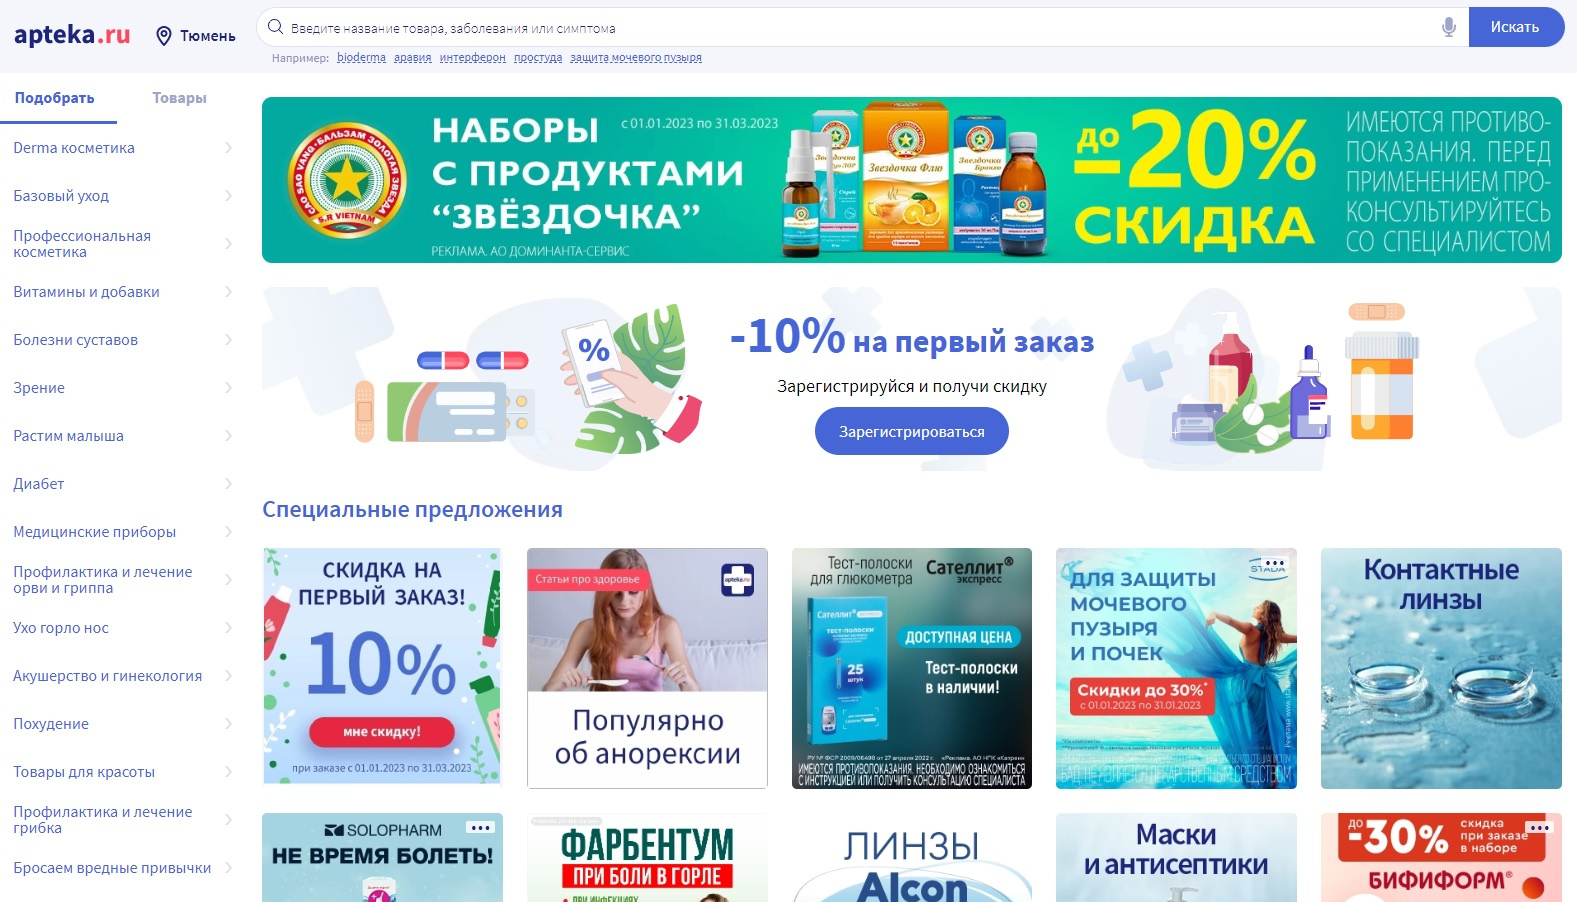 Сервис Аpteka.ru переходит на семидневную доставку. Теперь заказы будут доставлять еще быстрее